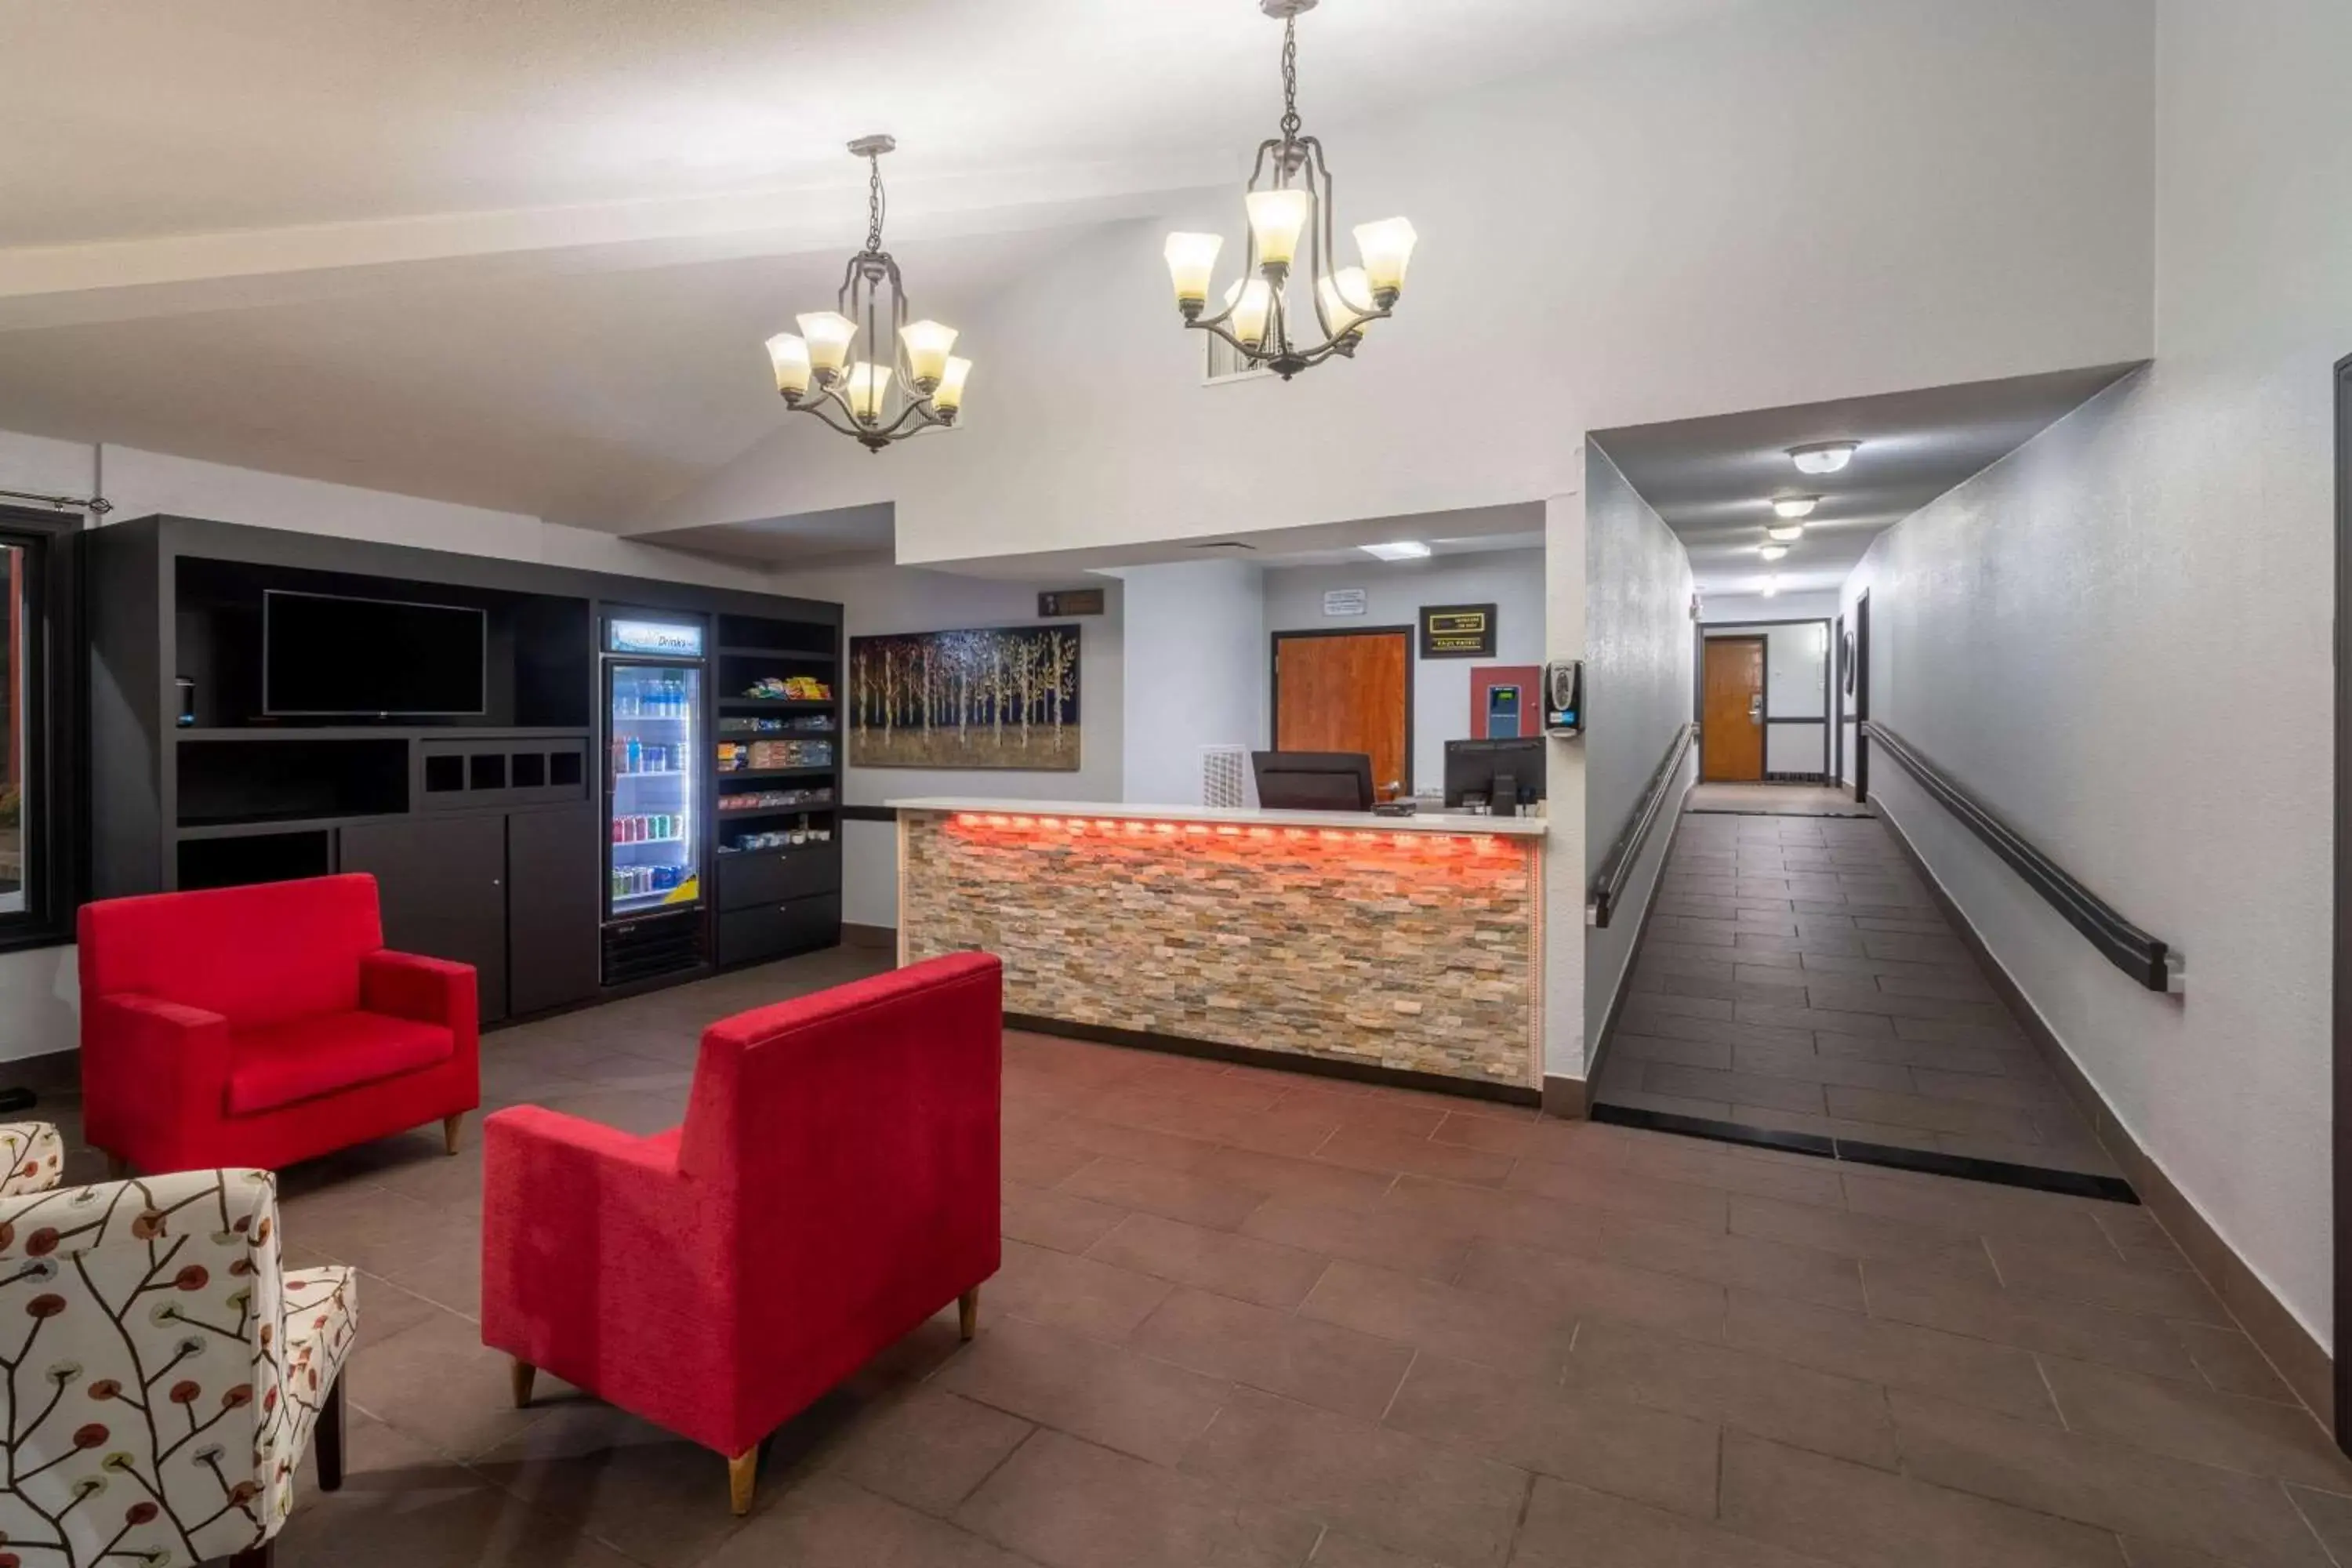 Lobby or reception, Lobby/Reception in Ramada by Wyndham Maggie Valley